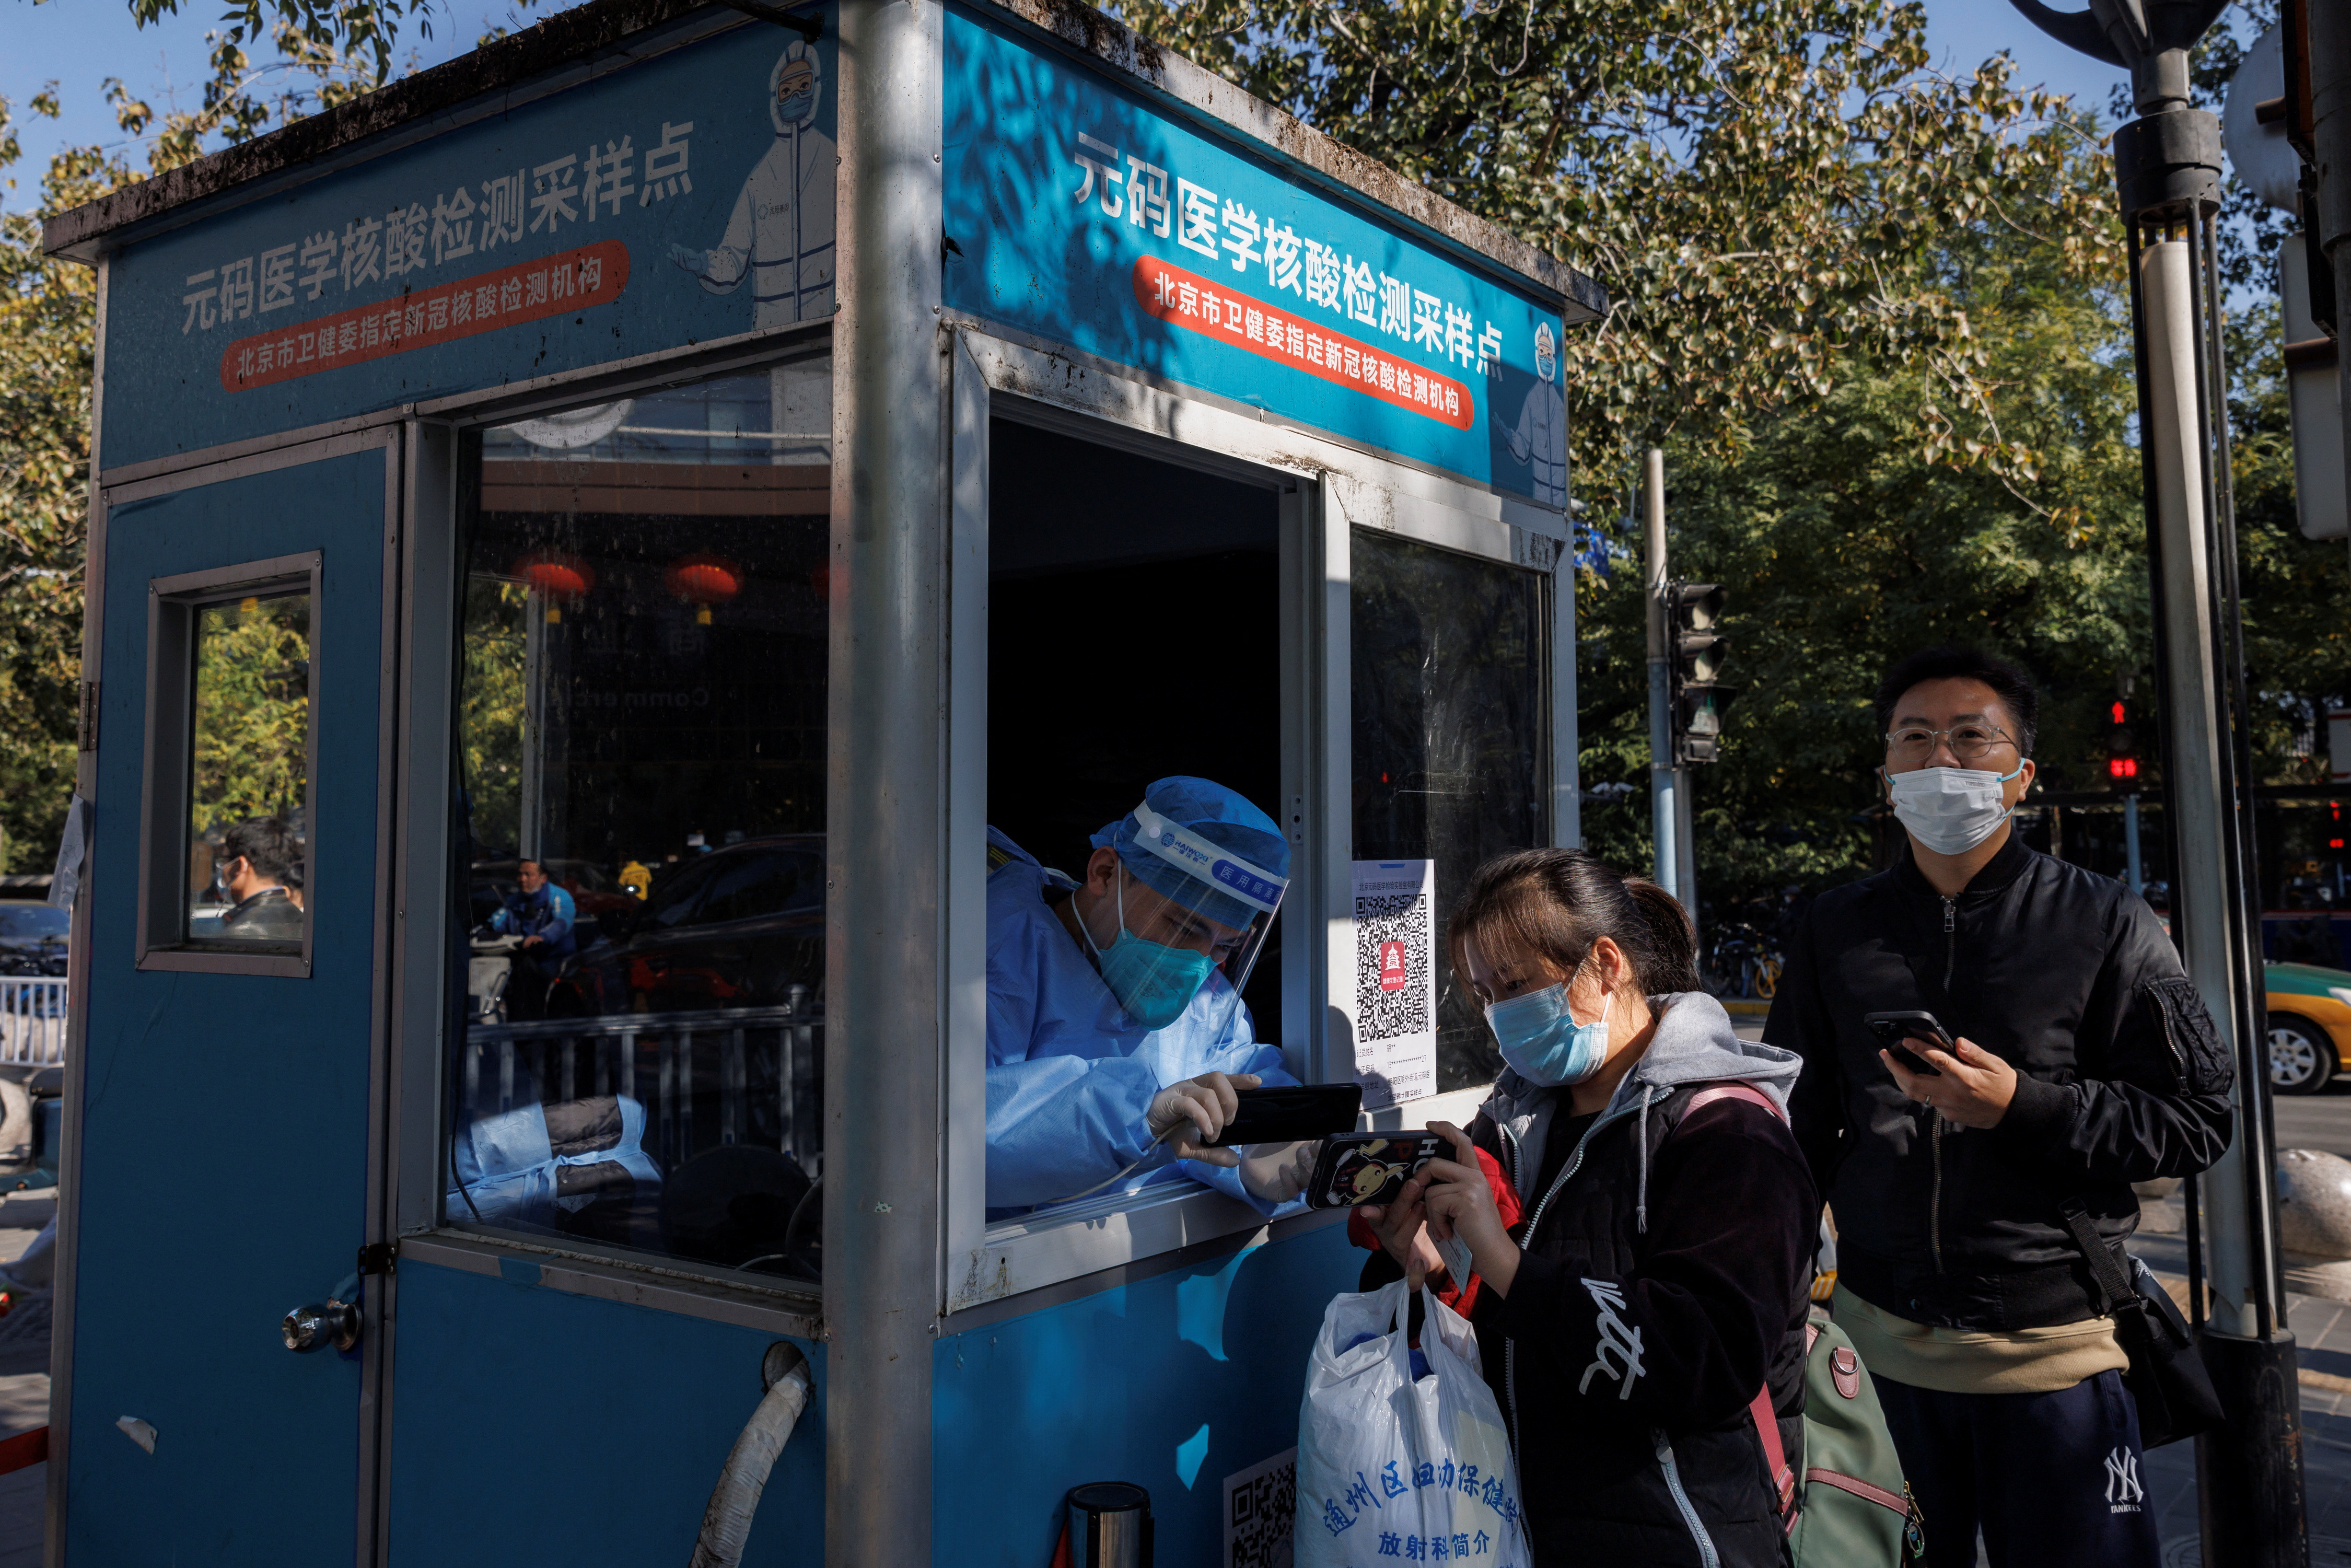 Um trabalhador de prevenção de pandemia registra detalhes pessoais de pessoas enquanto se alinham para fazer testes de swab em uma cabine de teste enquanto surtos de doença por coronavírus (COVID-19) continuam em Pequim